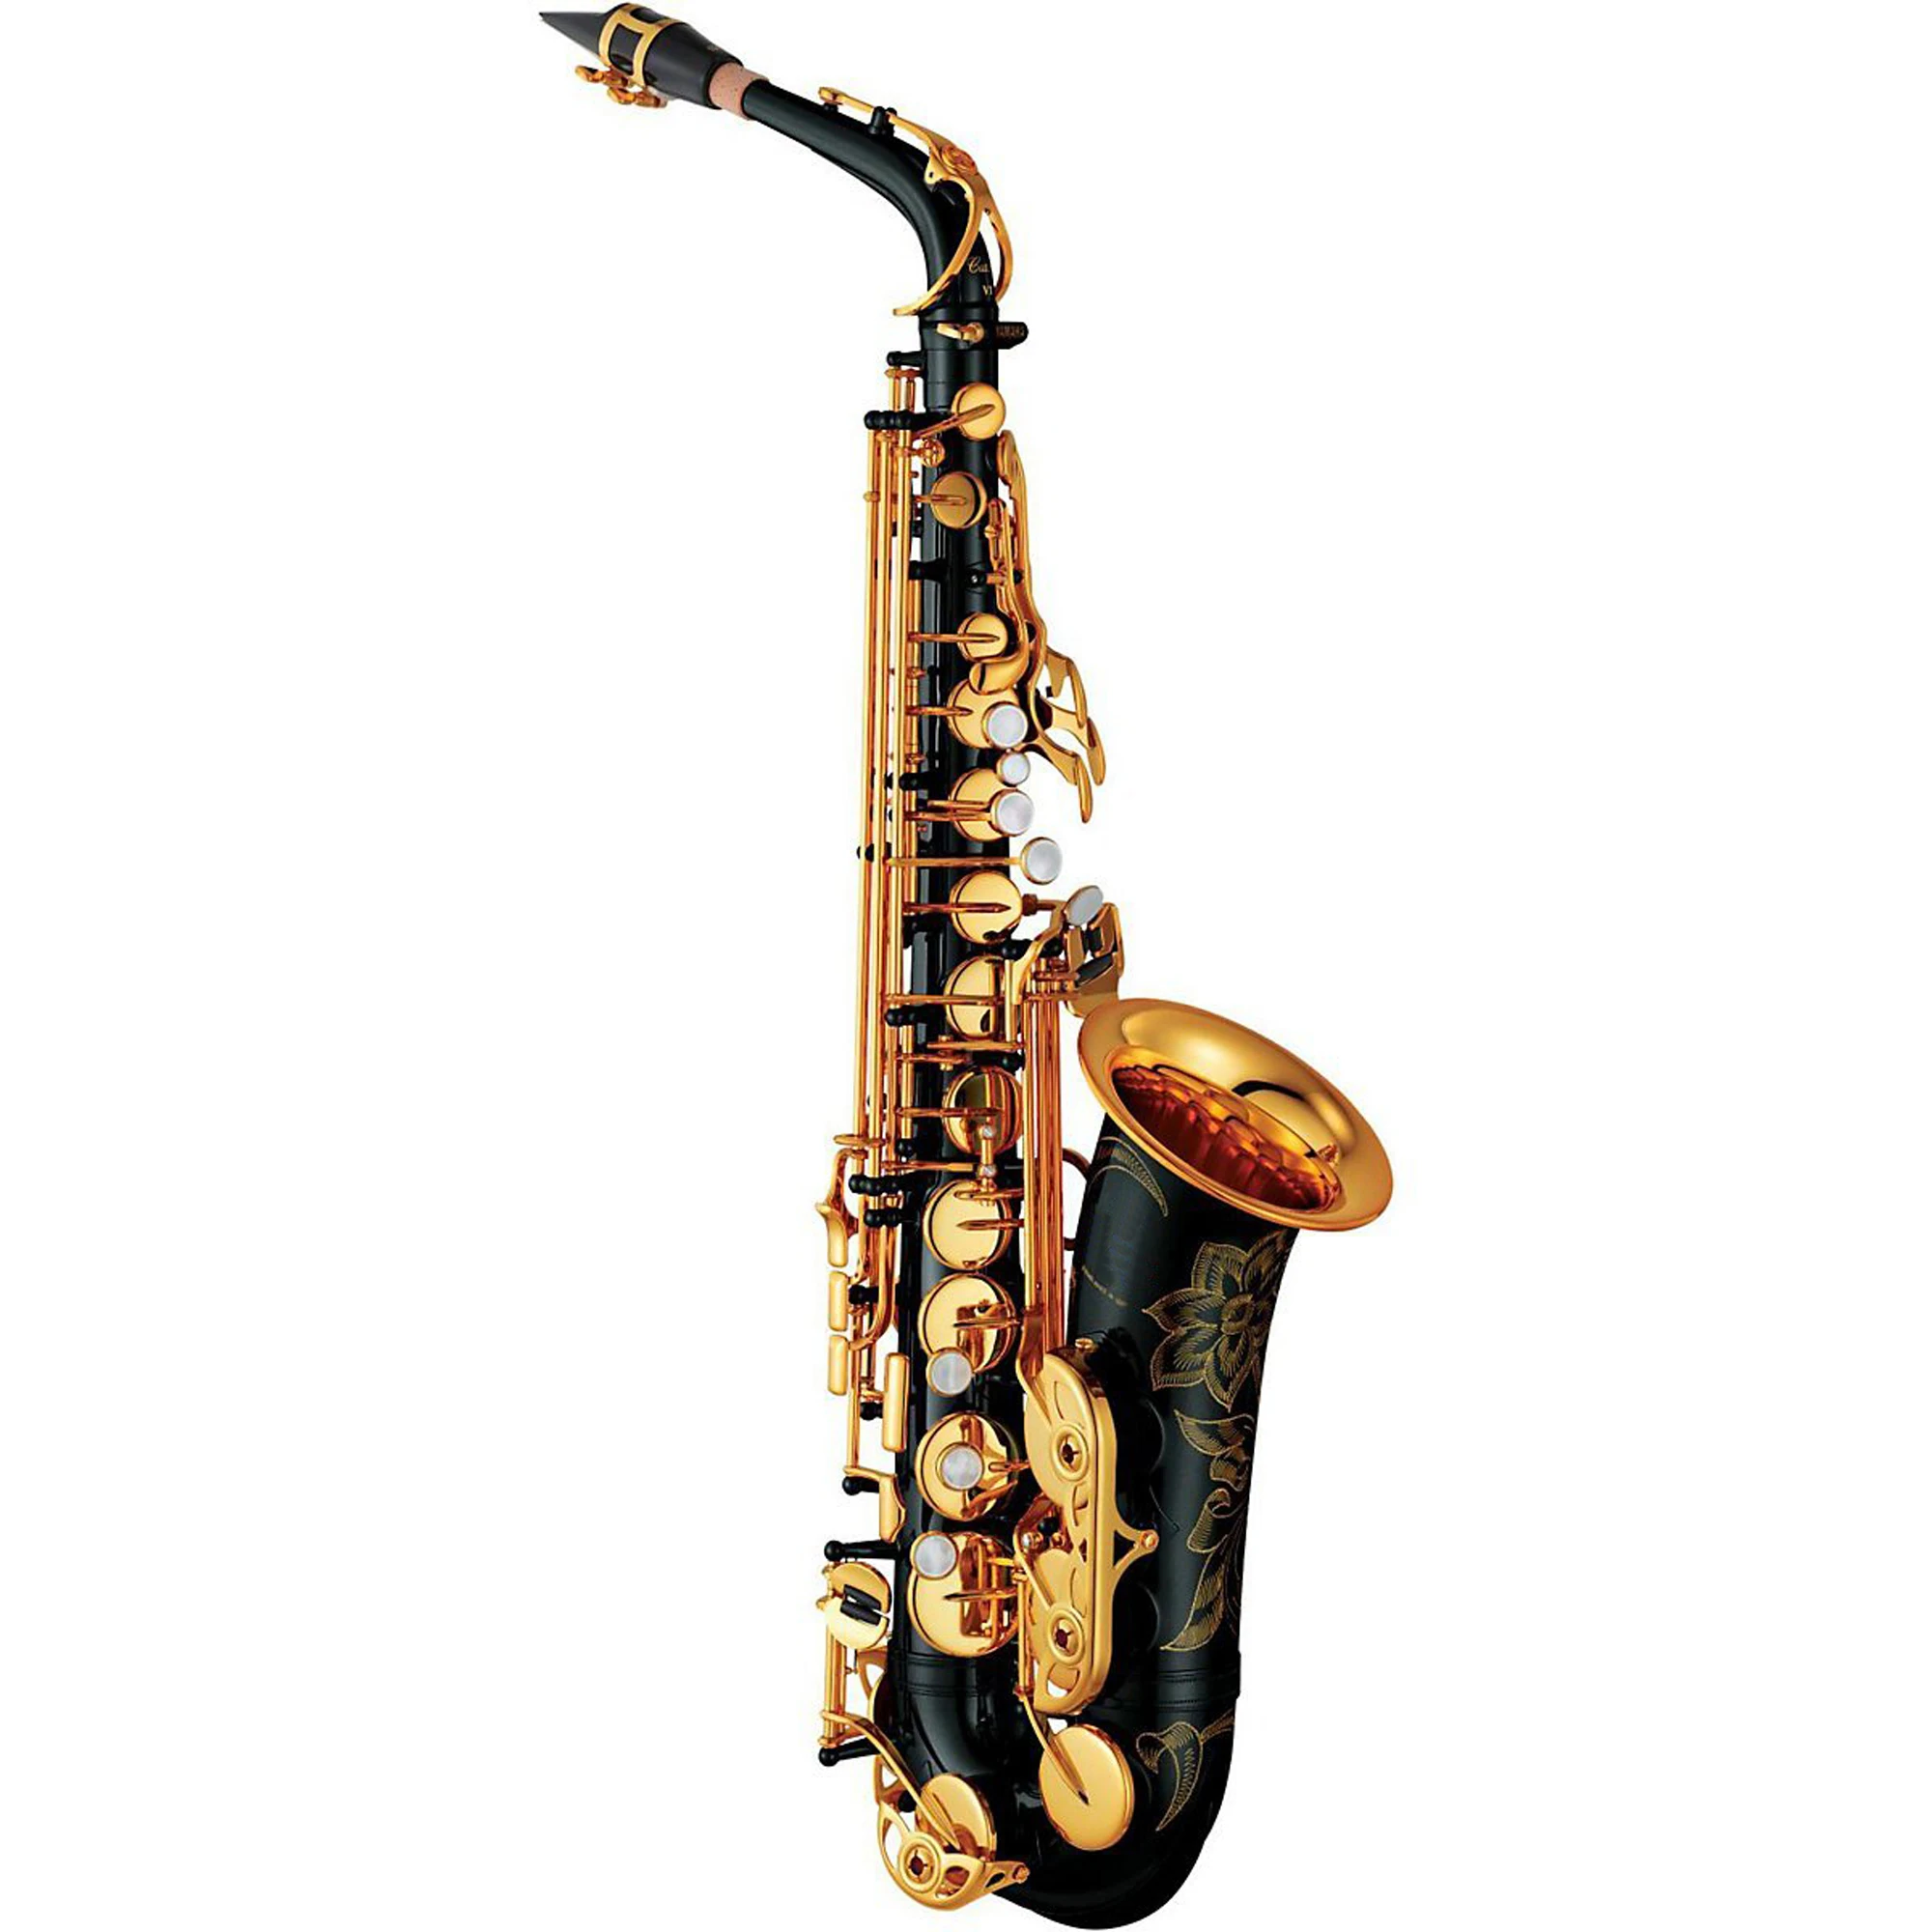 Альт-саксофон MFC 280 Профессиональный альт-саксофон под заказ 280 серия высокий саксофон черный лак с мундштуком тростники чехол на шею